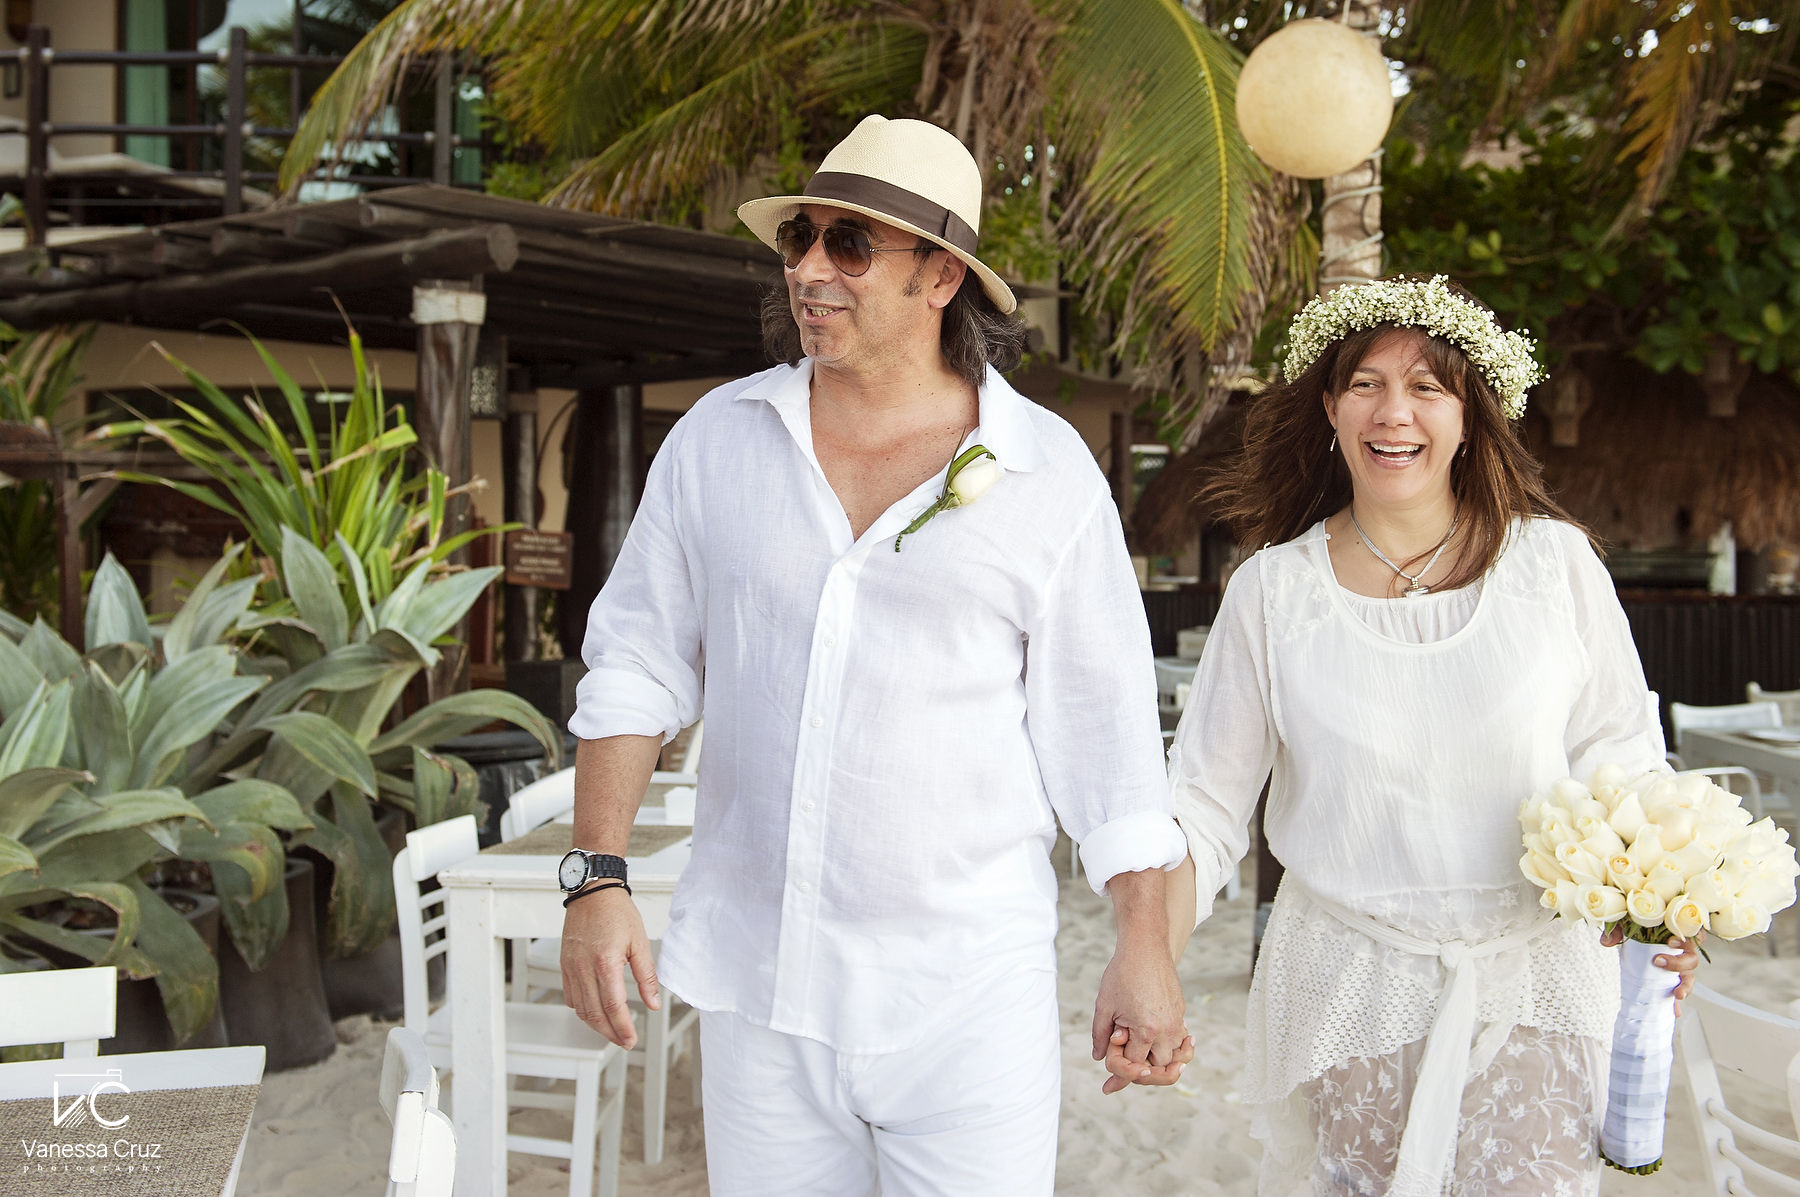 Bride and Groom Destination Wedding Portraits Playa del Carmen Mexico